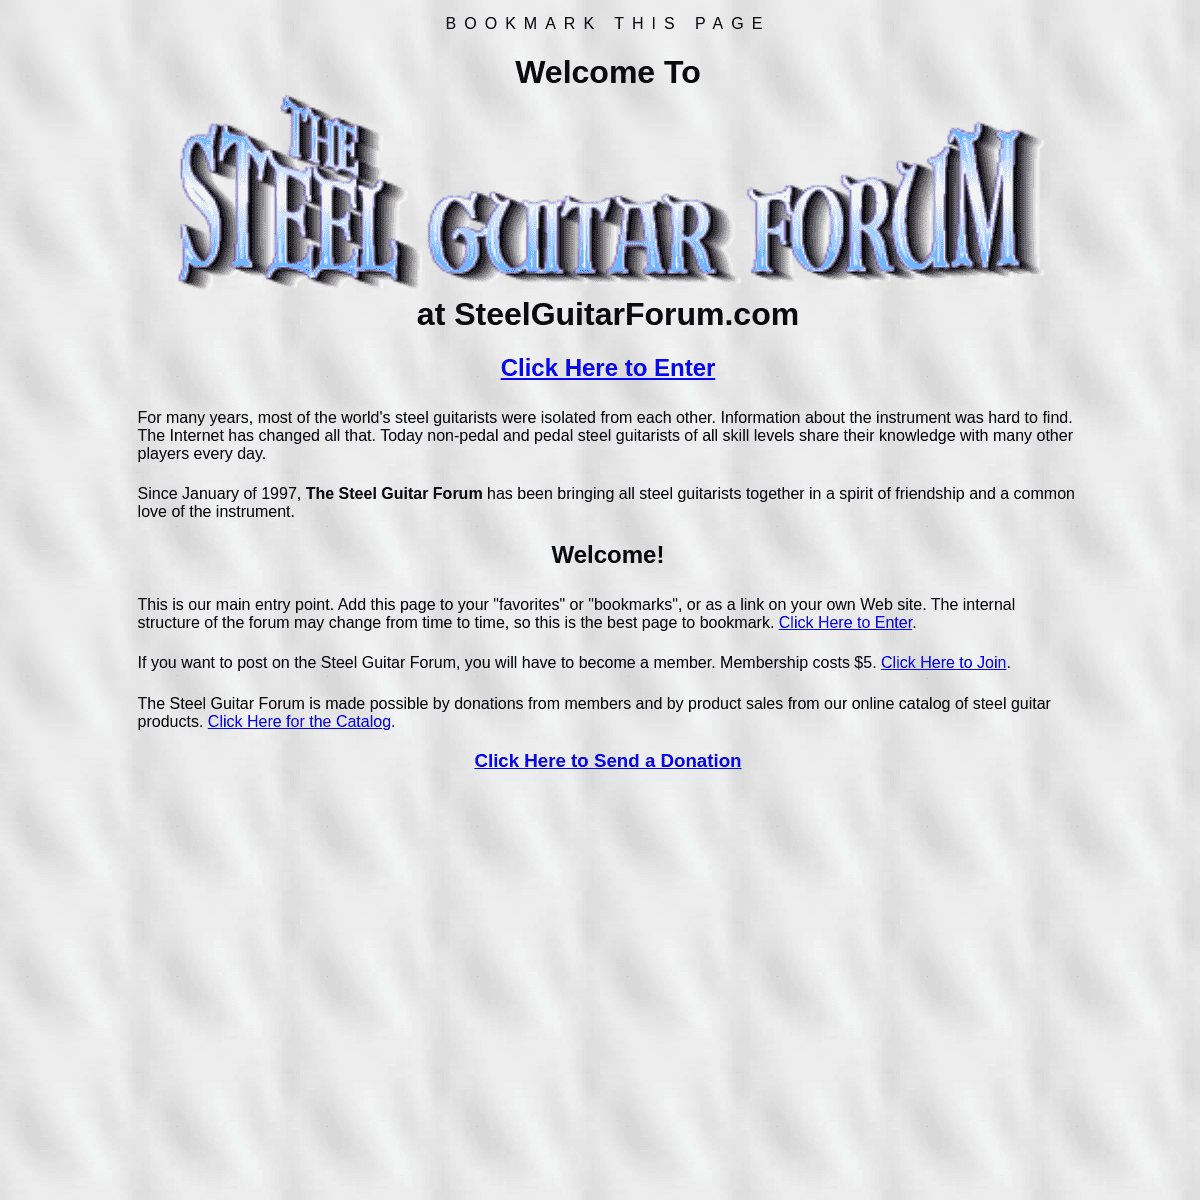 A complete backup of https://steelguitarforum.com